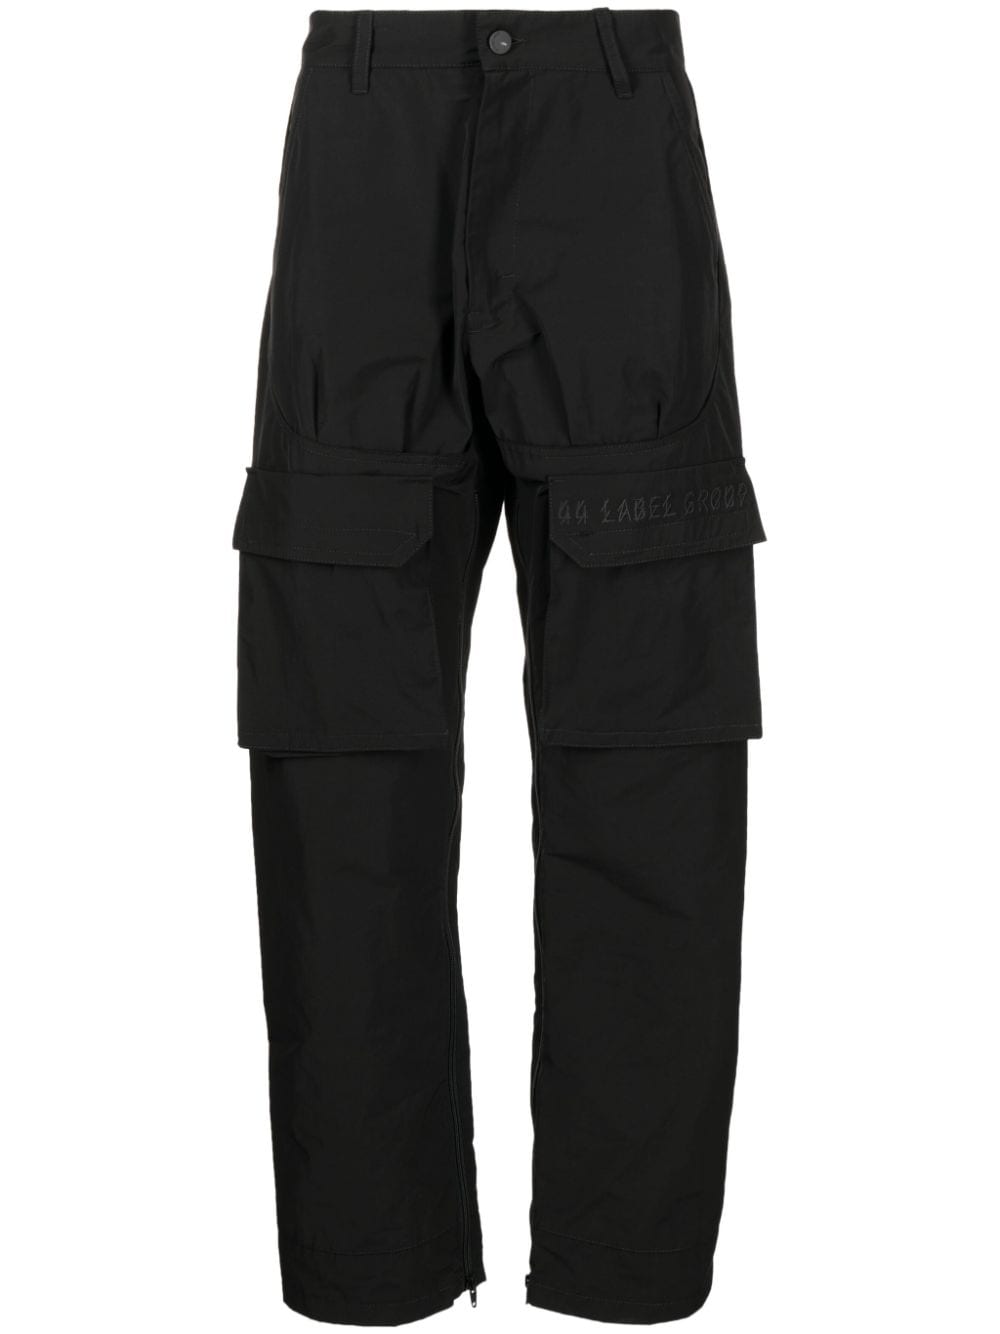 44 LABEL GROUP multi-pocket parachute trousers - Black von 44 LABEL GROUP